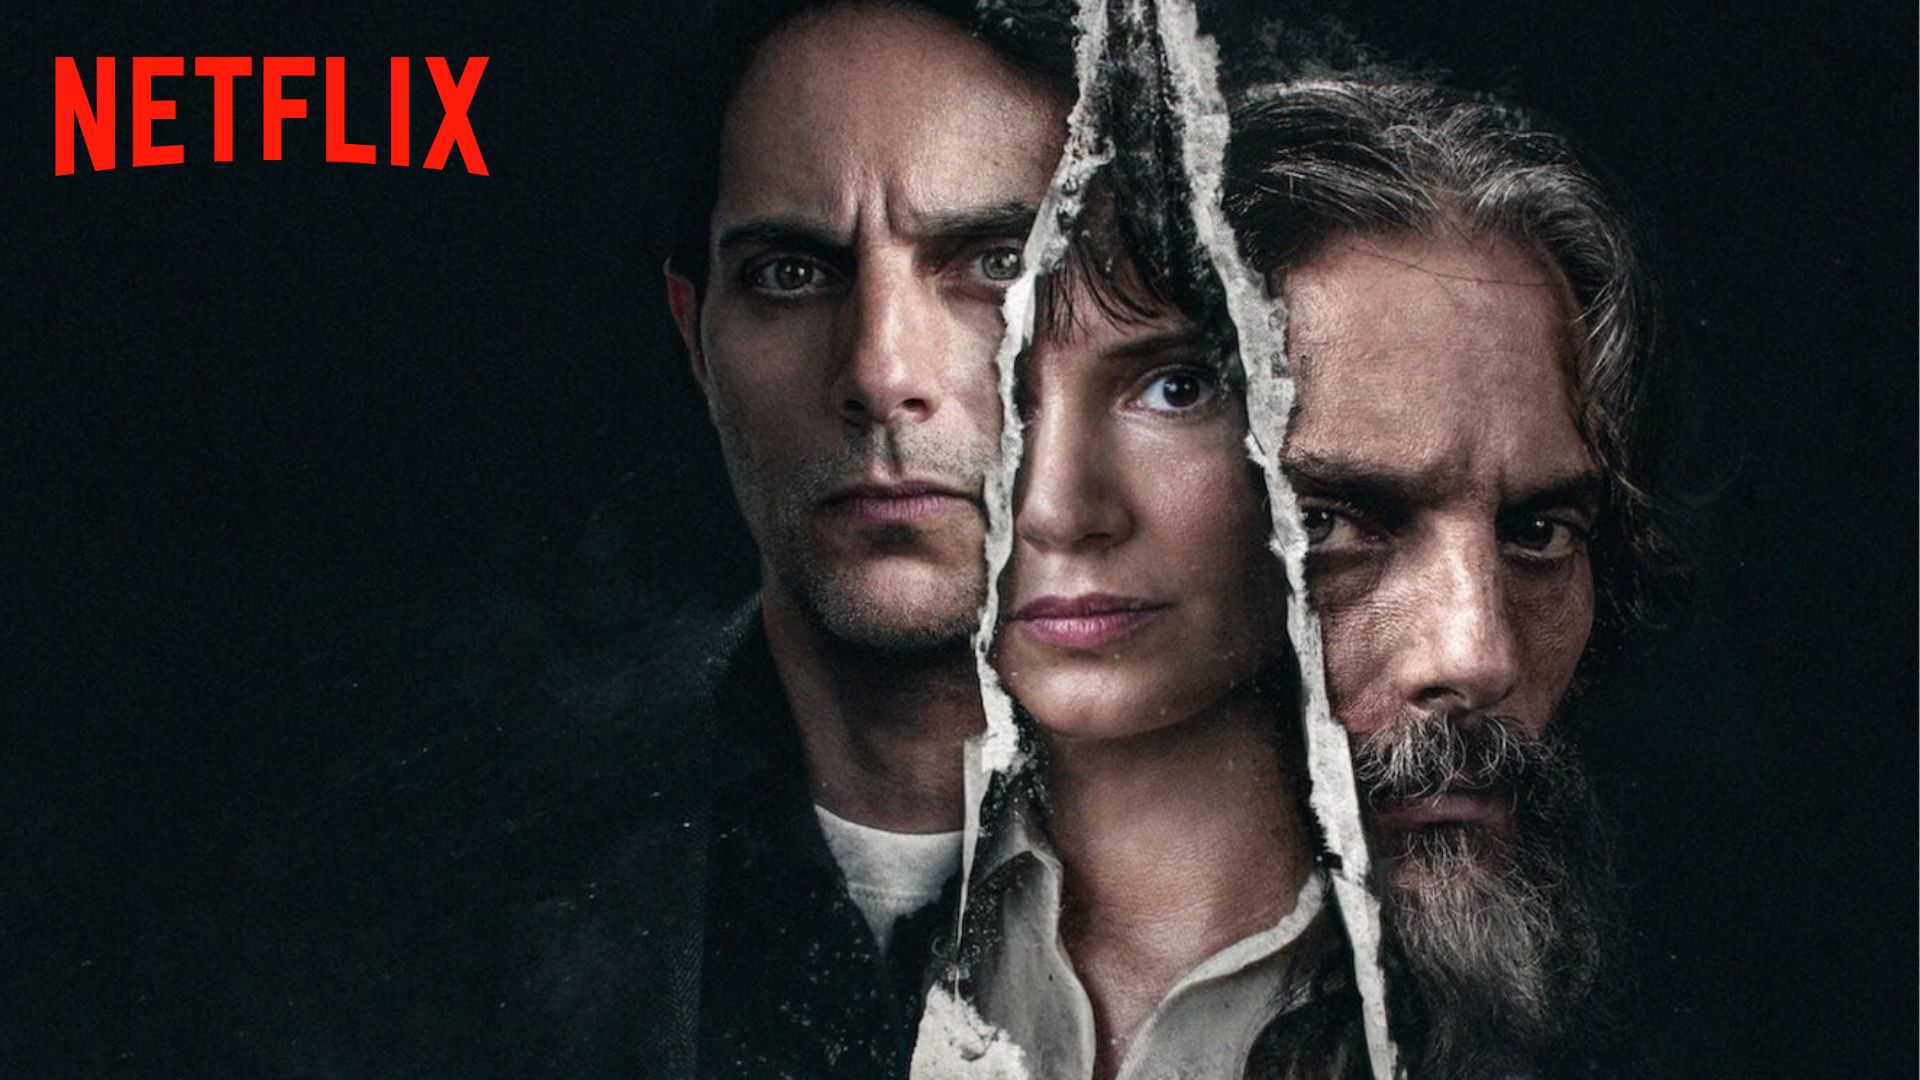 Disponible en Netflix: este thriller dramático hará las delicias de los suscriptores